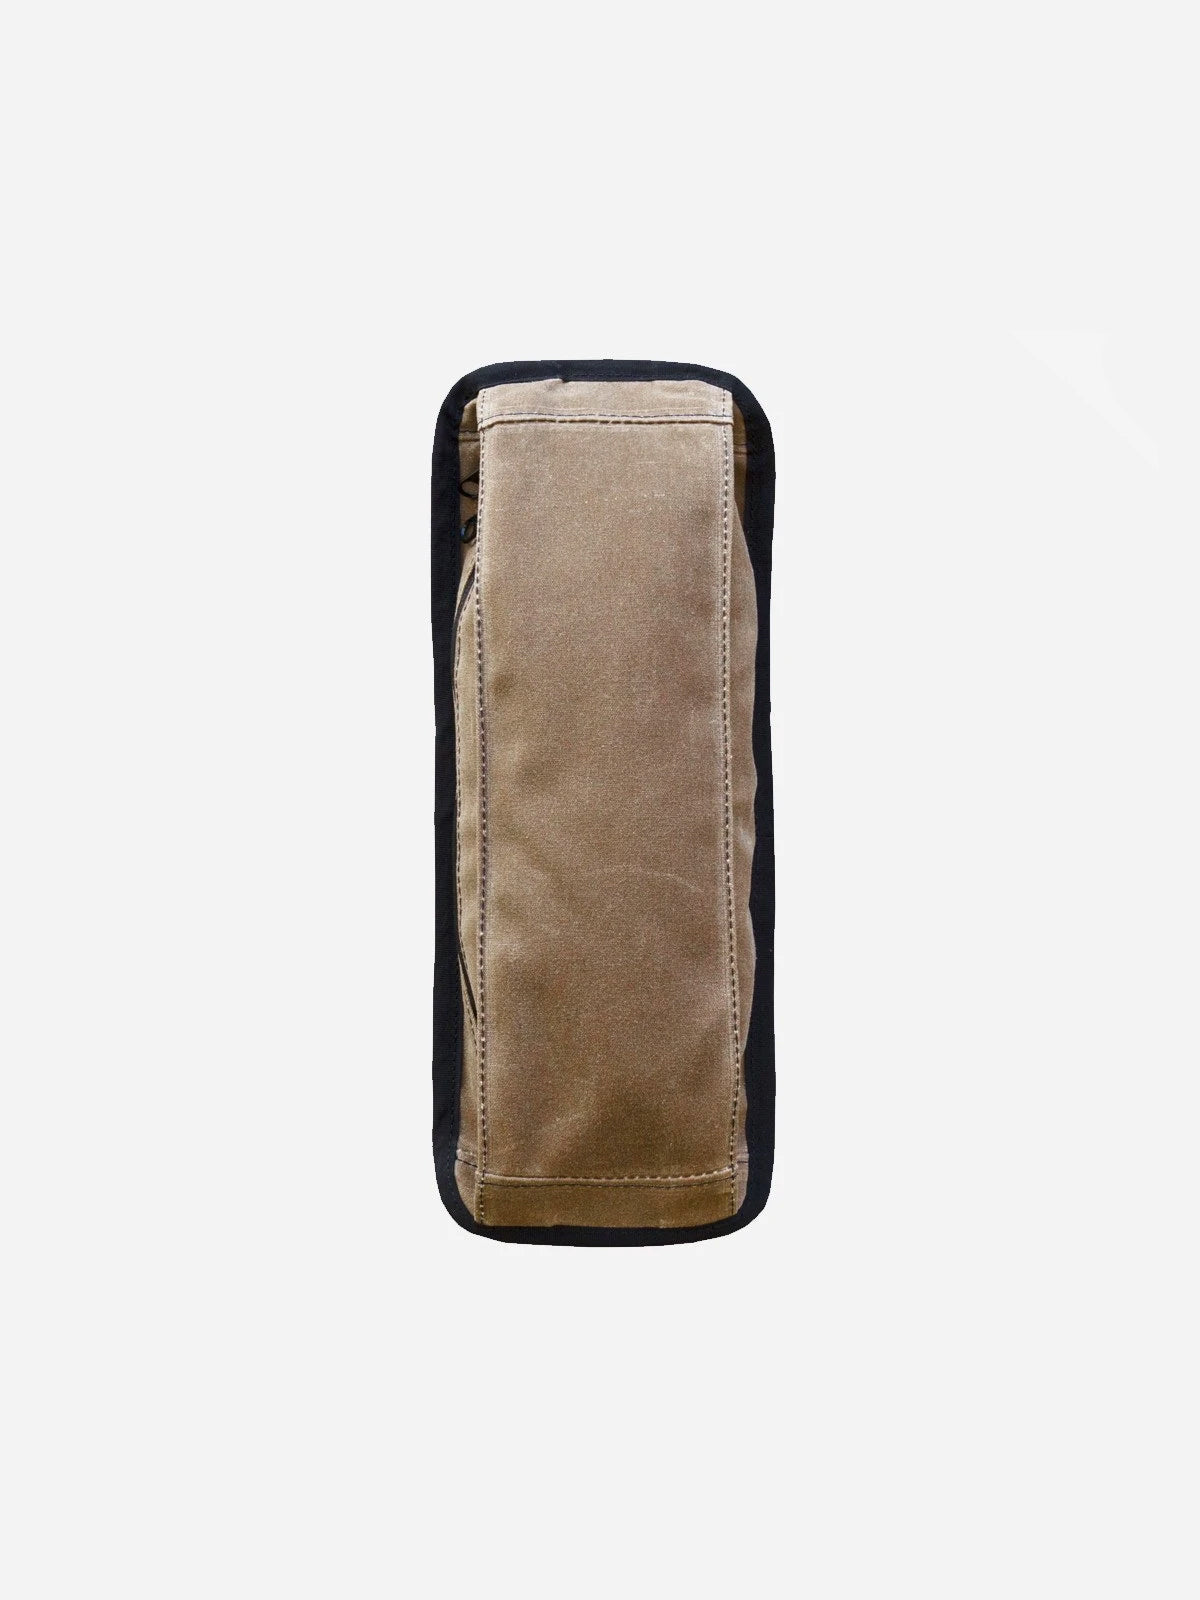 Arkiv Vertical Zippered Pocket by Mission Workshop - Säänkestävät laukut ja tekniset vaatteet - San Francisco & Los Angeles - Rakennettu kestämään - ikuisesti taattu